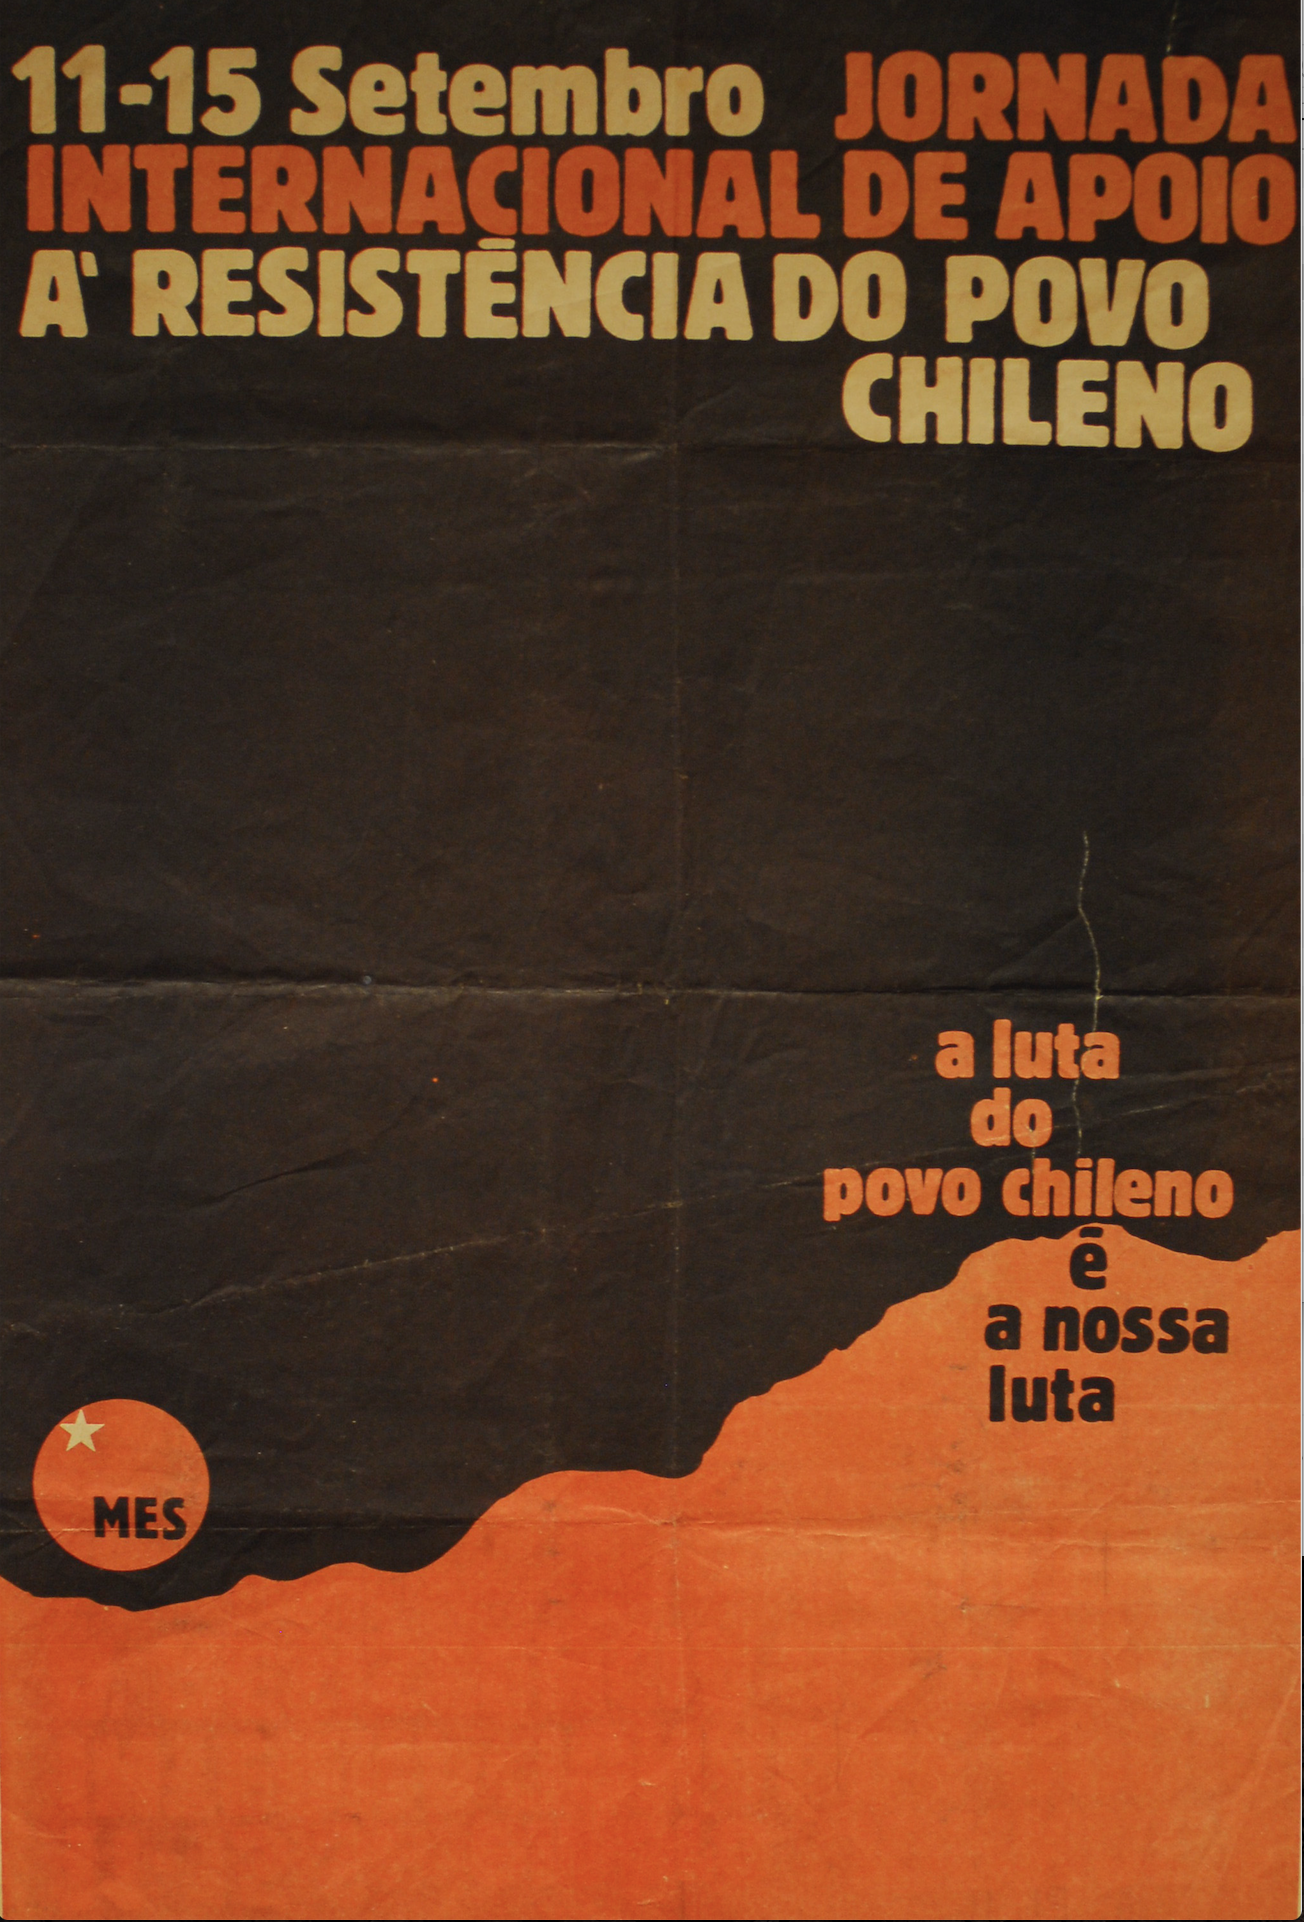 Jornada Internacional de apoio à resistência do Povo Chileno